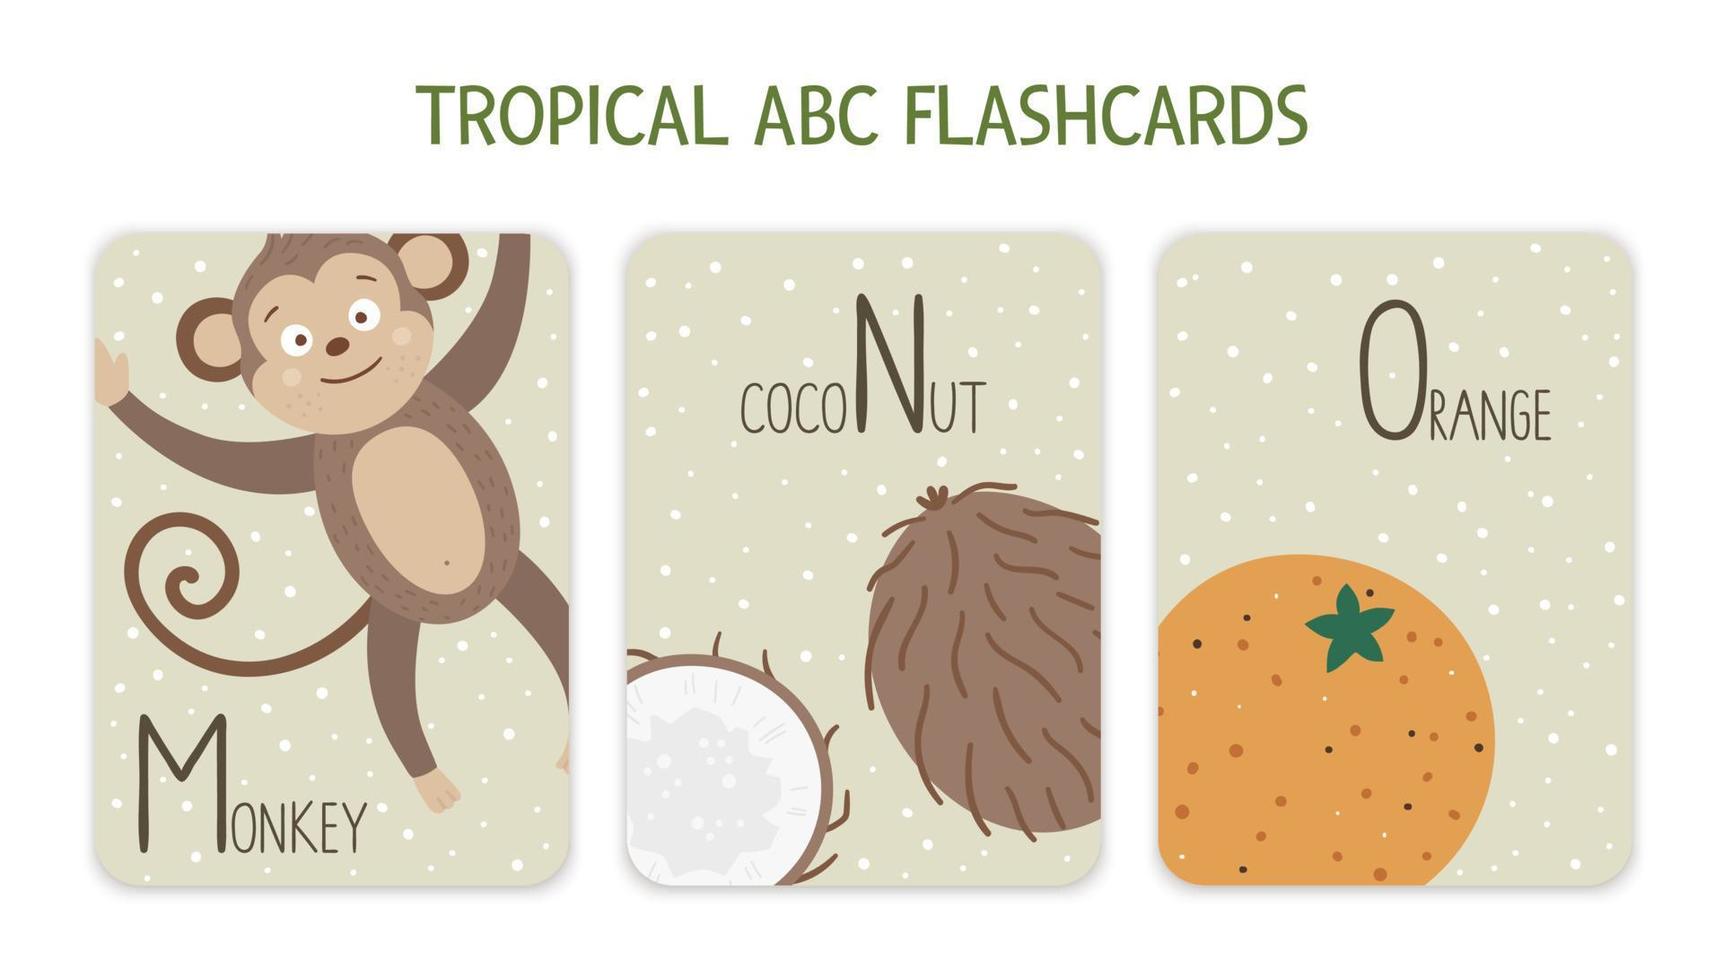 kleurrijke Alfabetletters m, n, o. phonics flashcard met tropische dieren, vogels, fruit, planten. schattige educatieve jungle-abc-kaarten voor het leren lezen met grappige aap, kokosnoot, sinaasappel. vector